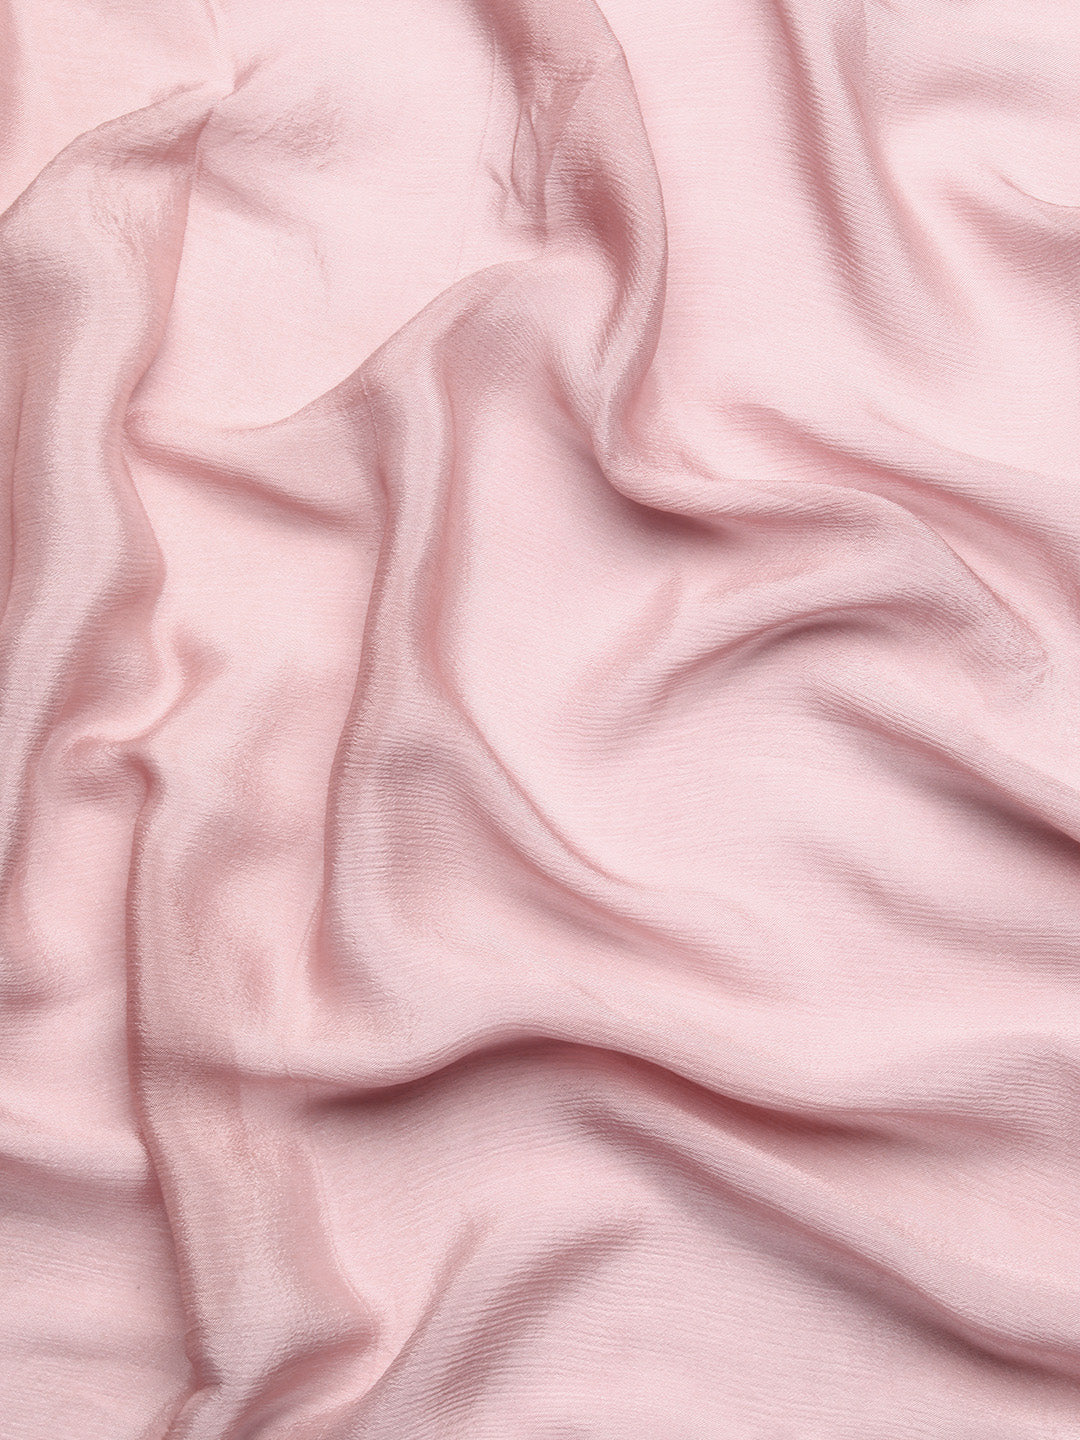 Designer Pink Sequin Saree